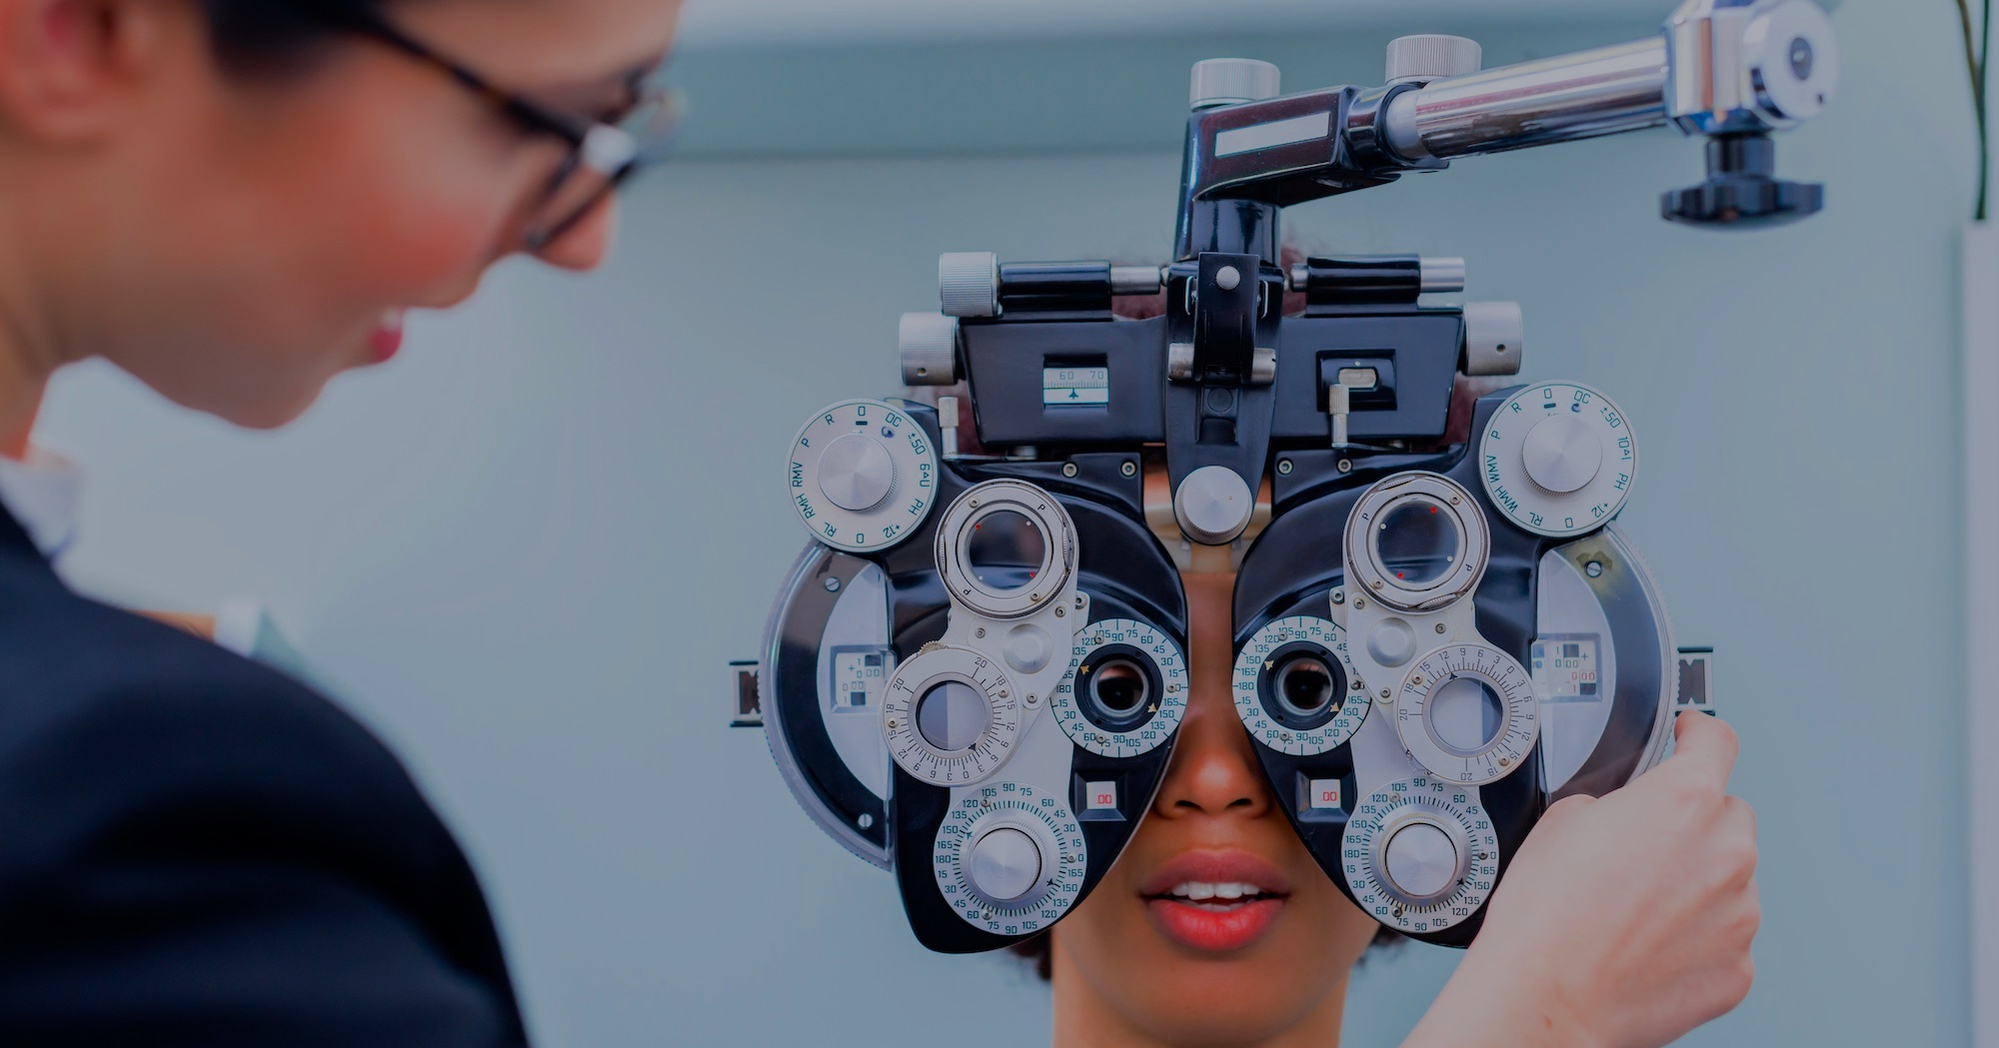 Image shows a woman conducting an eye examination using a phoropter 